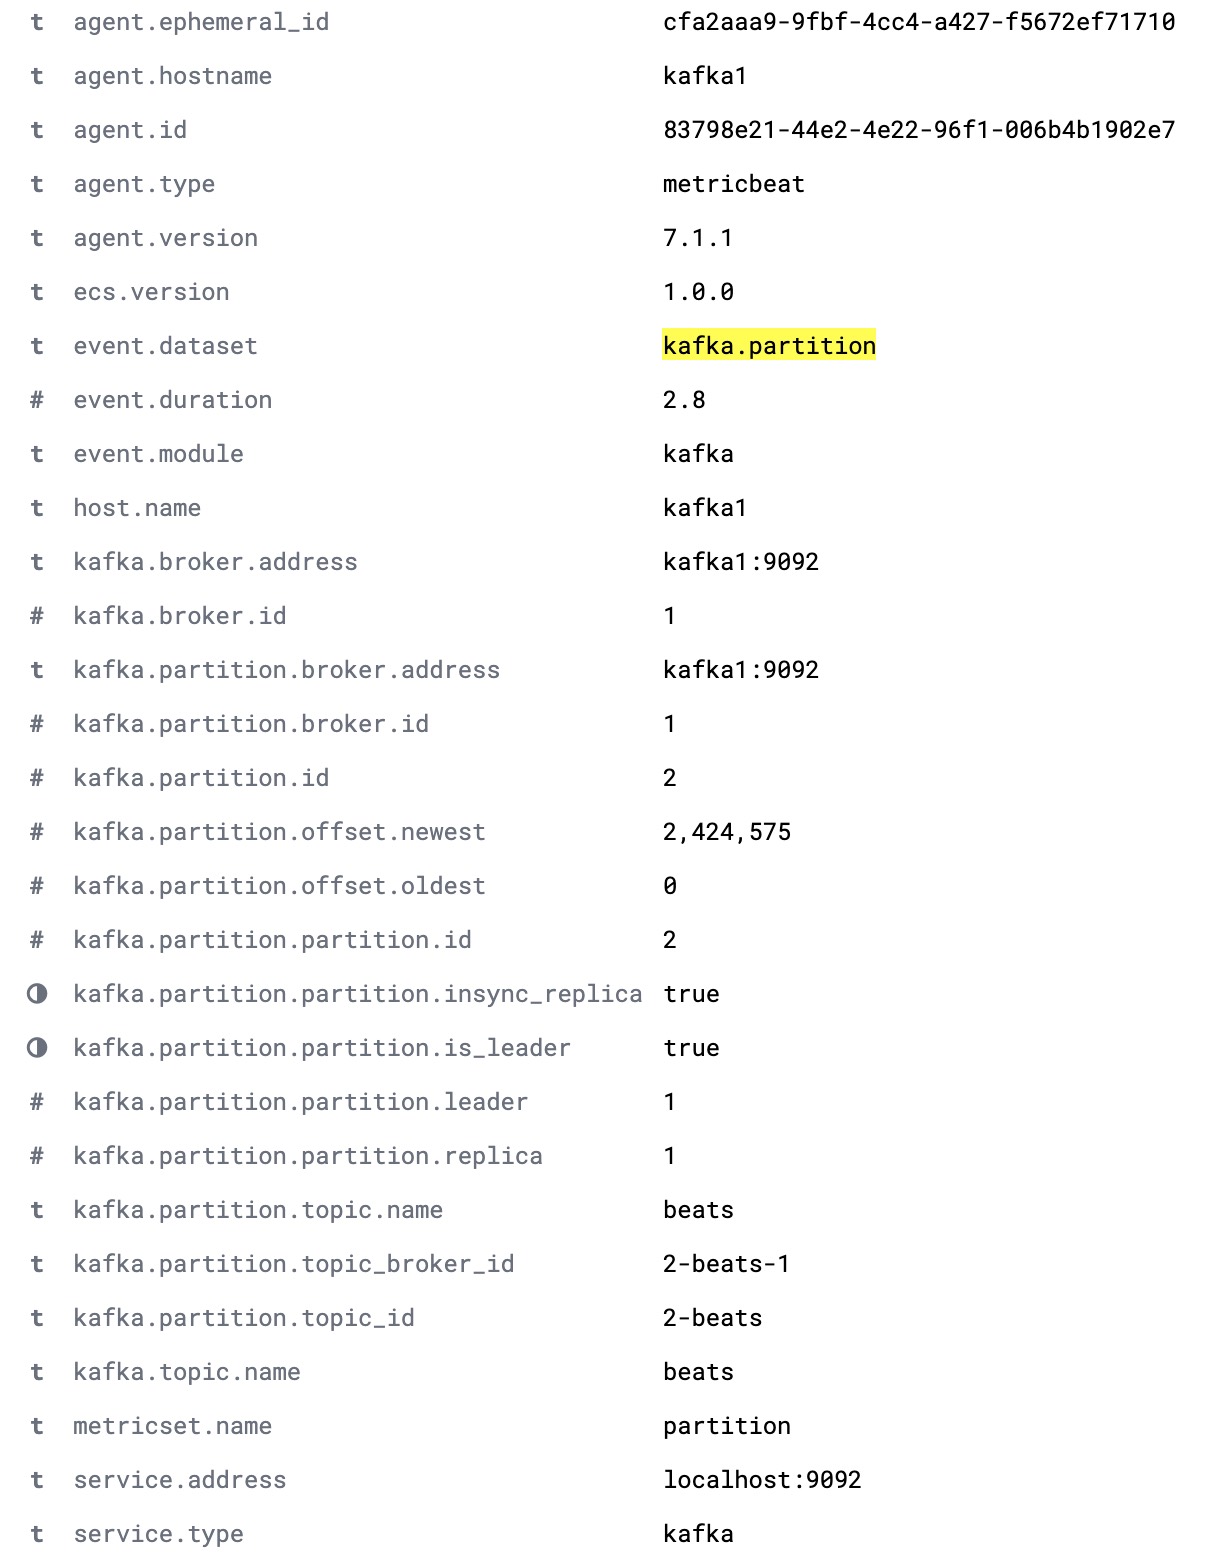 クラスター内の完全な詳細を示す、完全なkafka.partitionのドキュメント